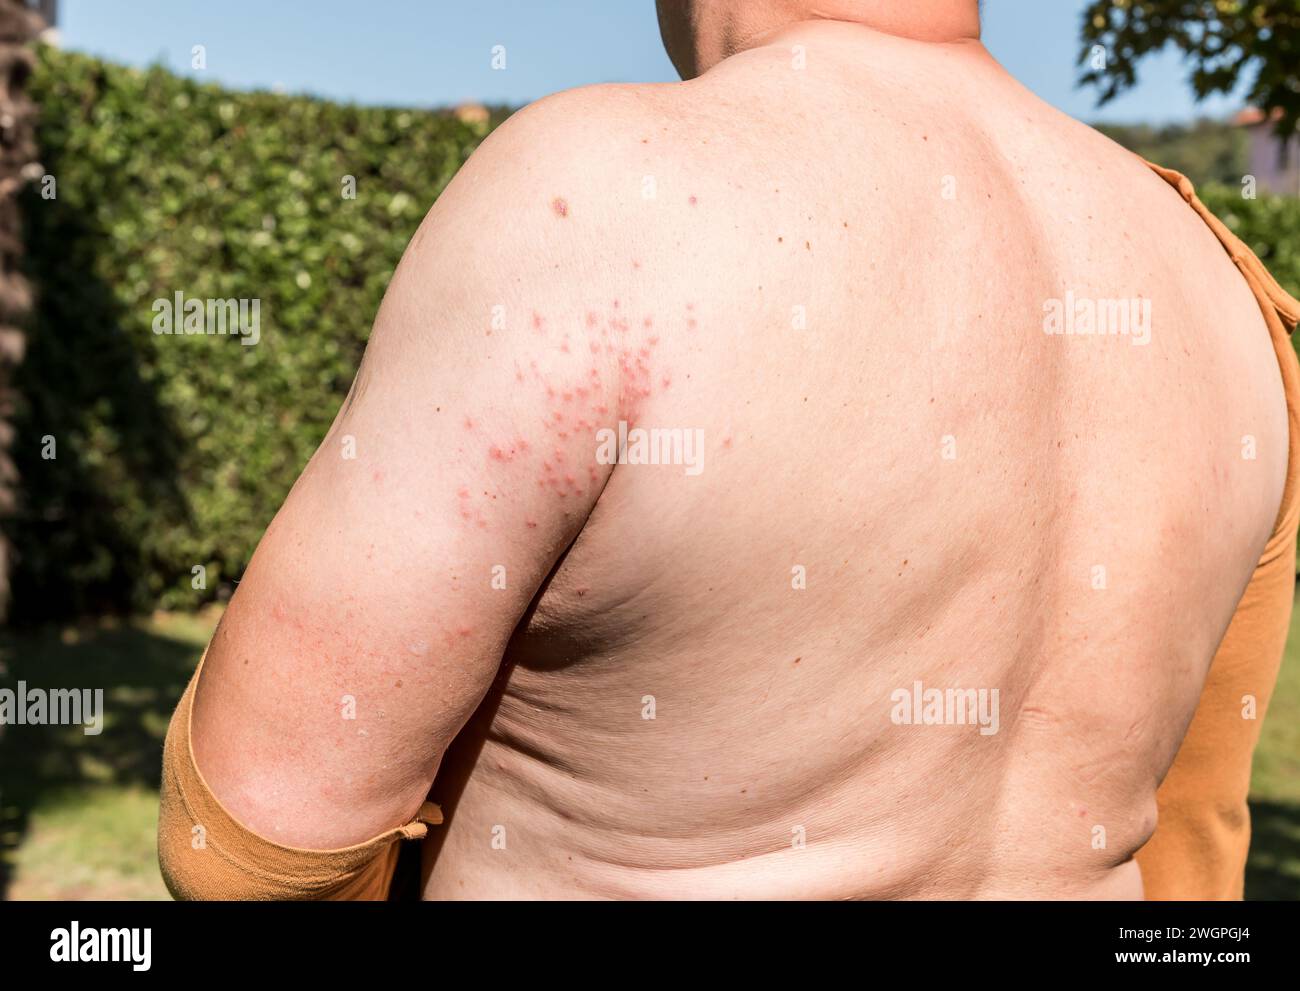 Il braccio dell'uomo con eruzione cutanea, sintomi di prurito, allergia cutanea. Foto Stock